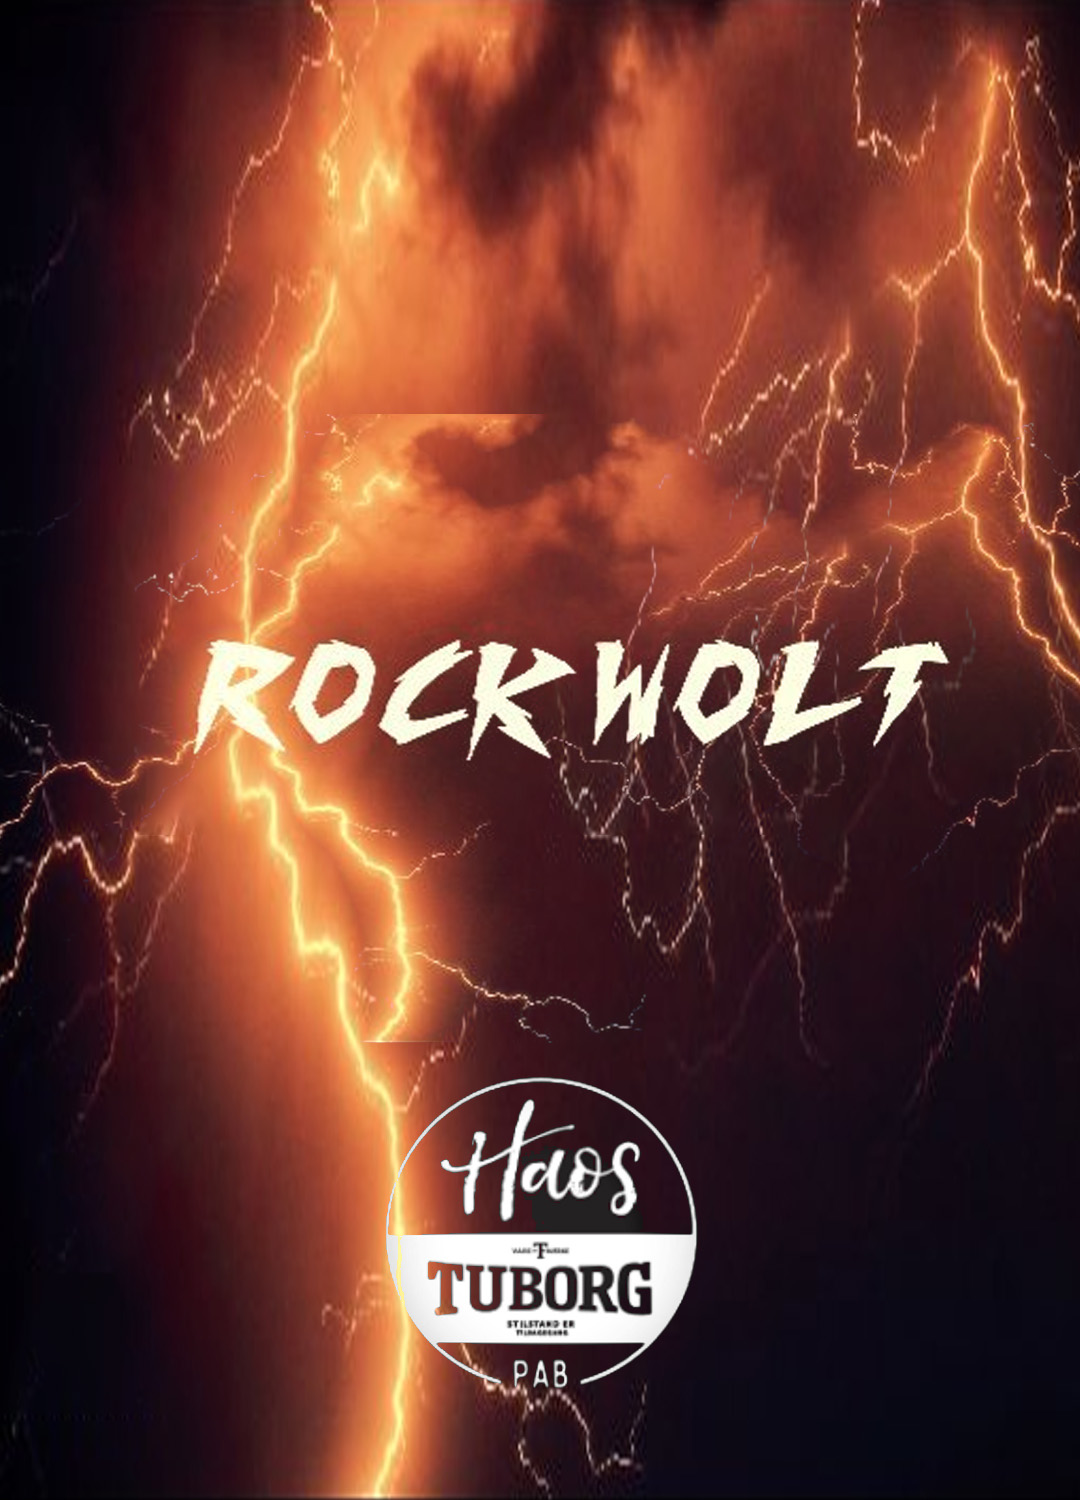 Rock Wolt Haos pub